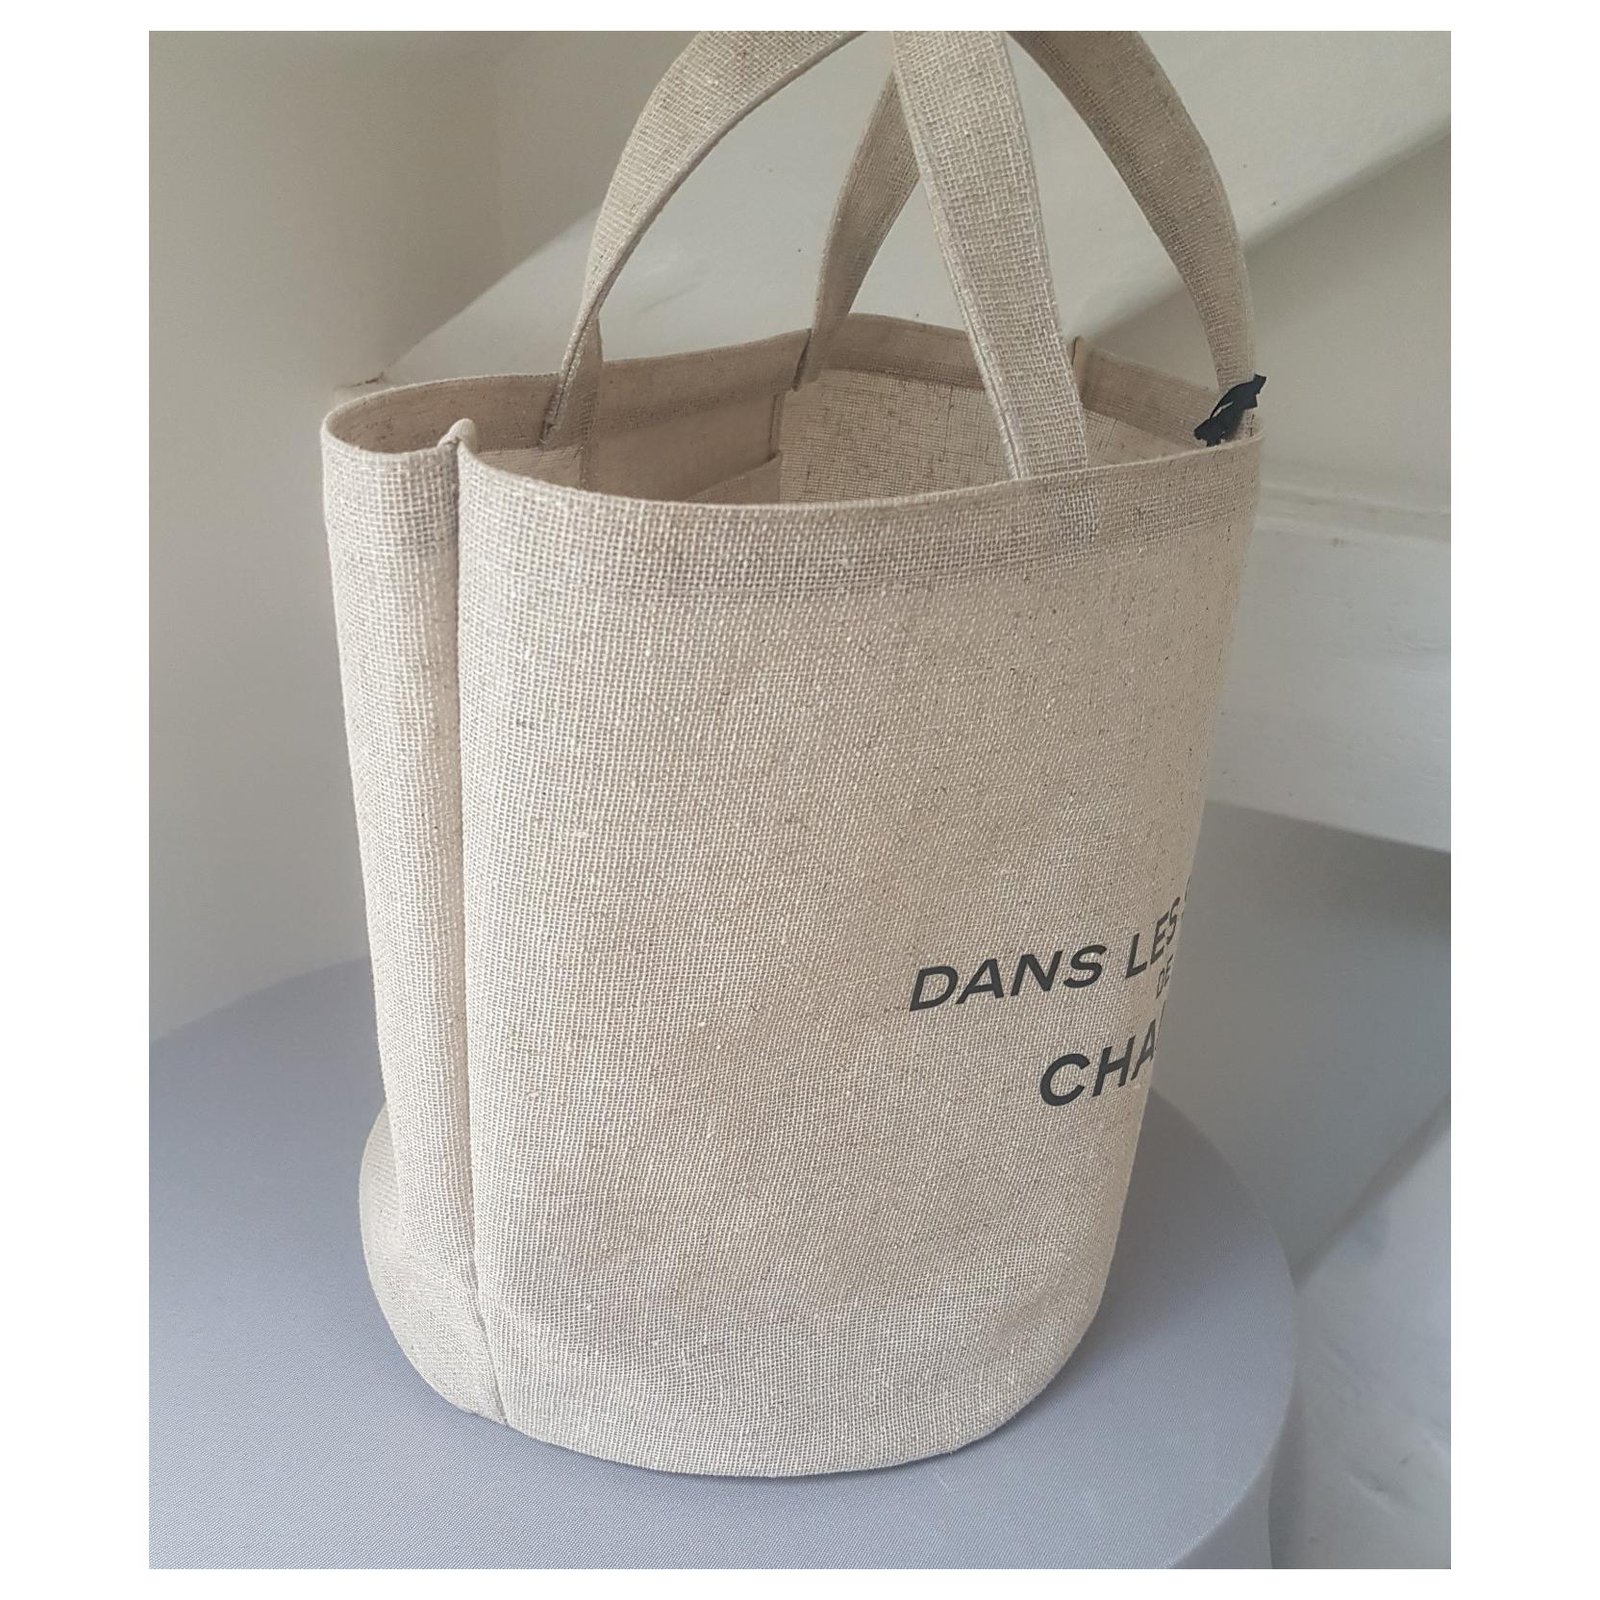 LCRestore Collector's “Dan Les Serres de Chanel” bucket tote